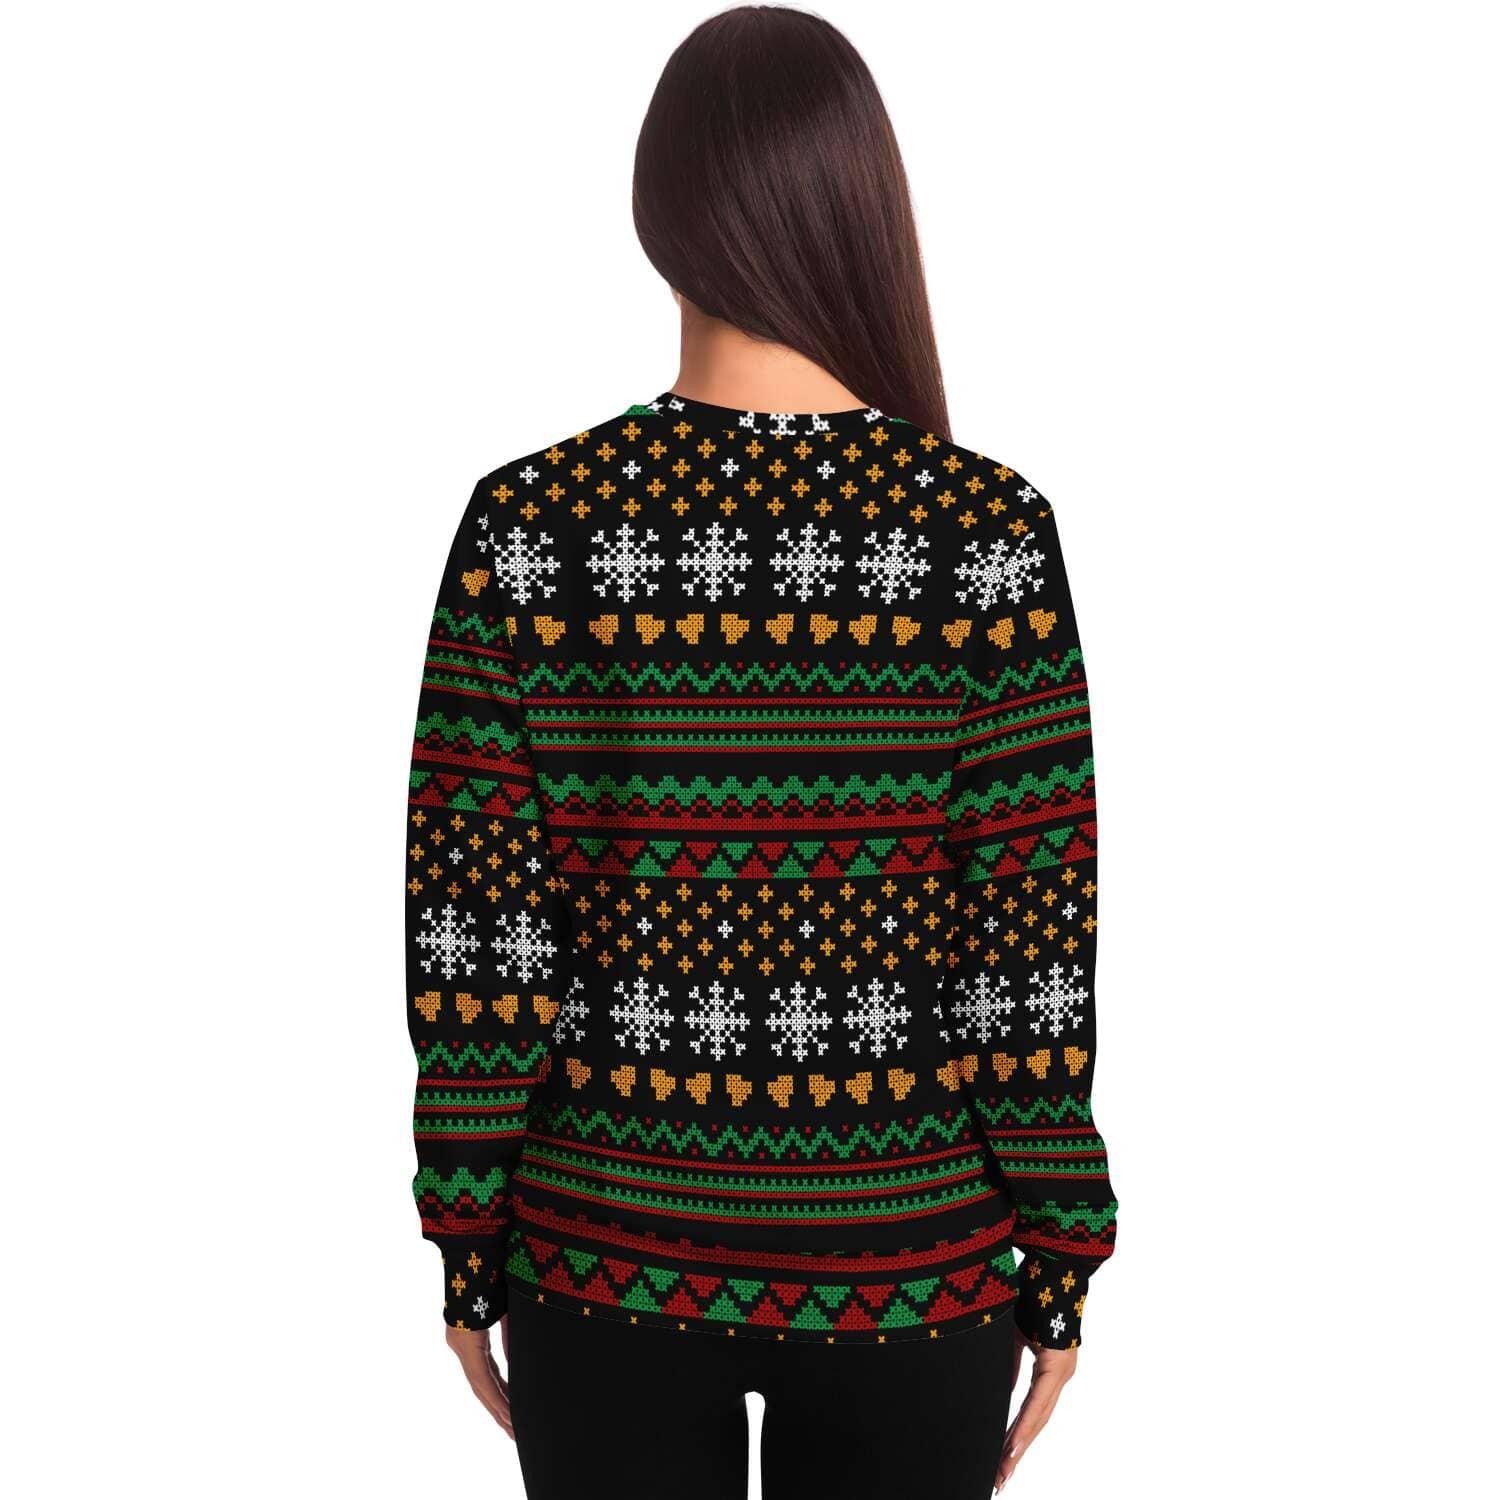 no-lift-no-gift-unisex-ugly-christmas-sweatshirt